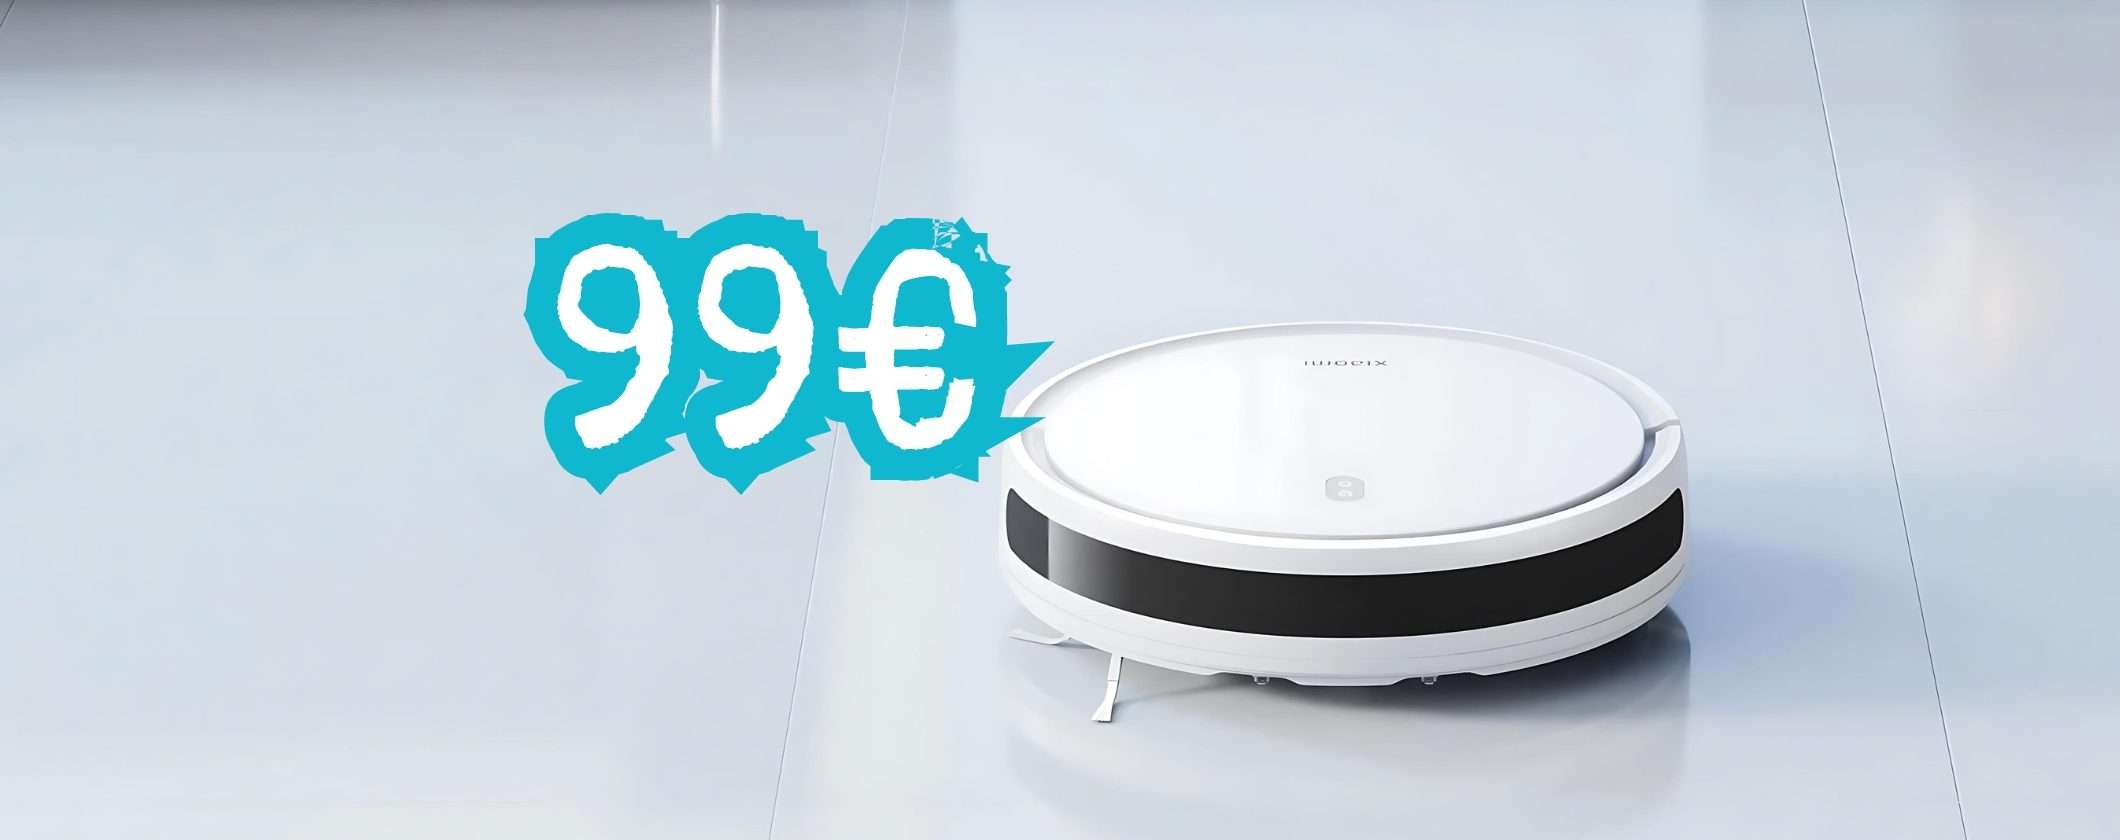 Xiaomi Robot Vacuum E12 SOTTO i 100€: da acquistare subito